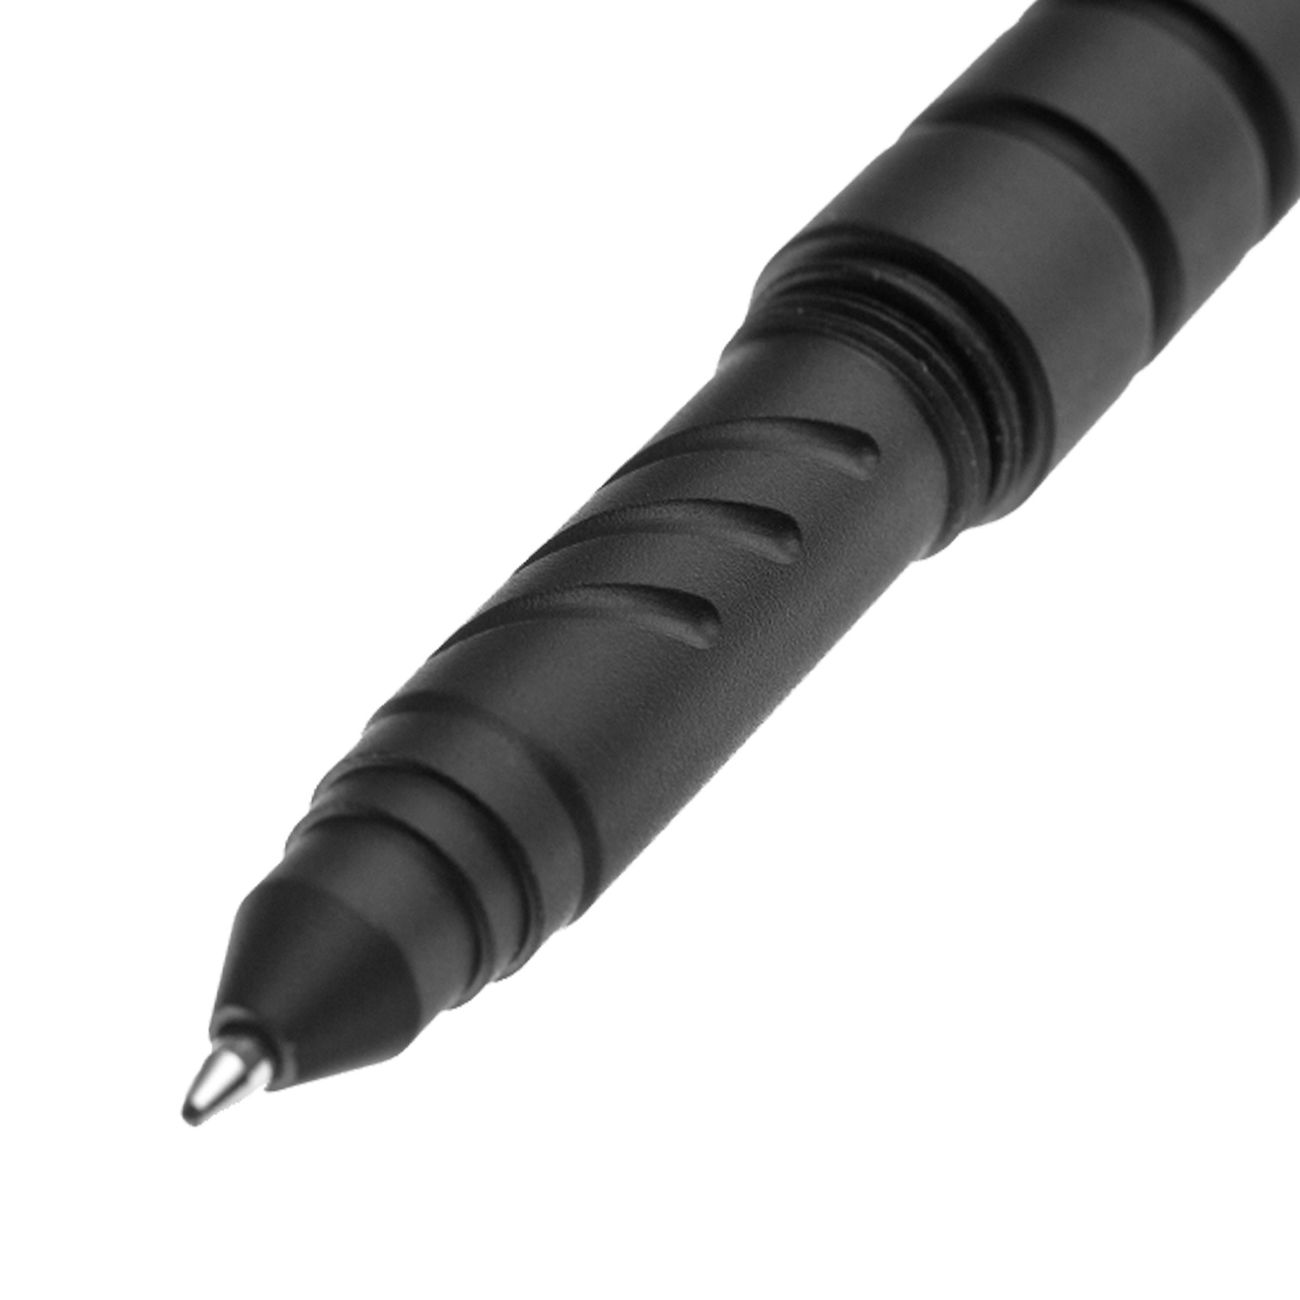 Marser Tactical Pen Assistent AST-3 Bild 1